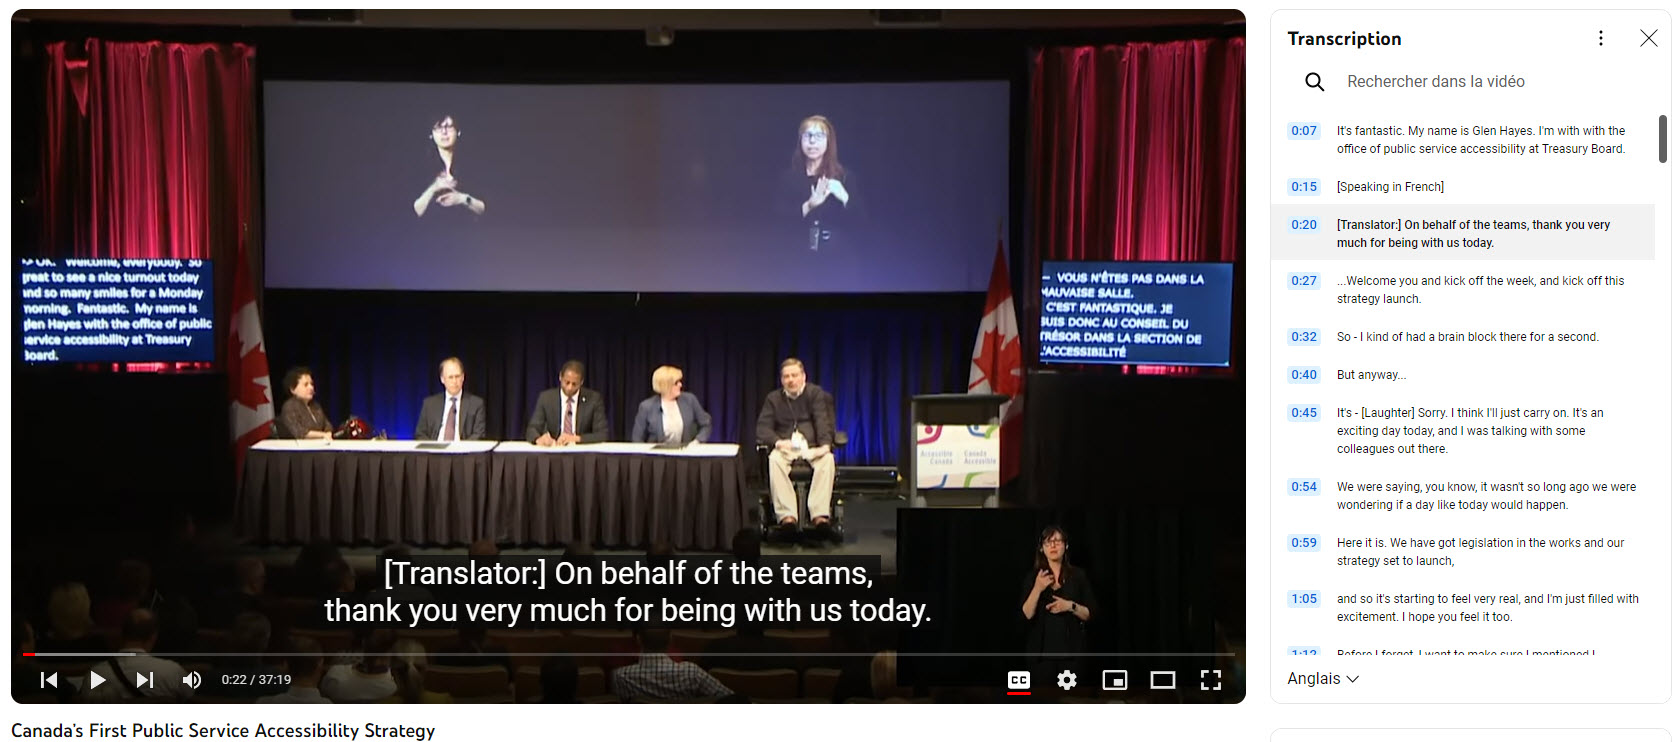 Capture d'écran de la vidéo comprenant la transcription, les sous-titres et le contenu traduit.